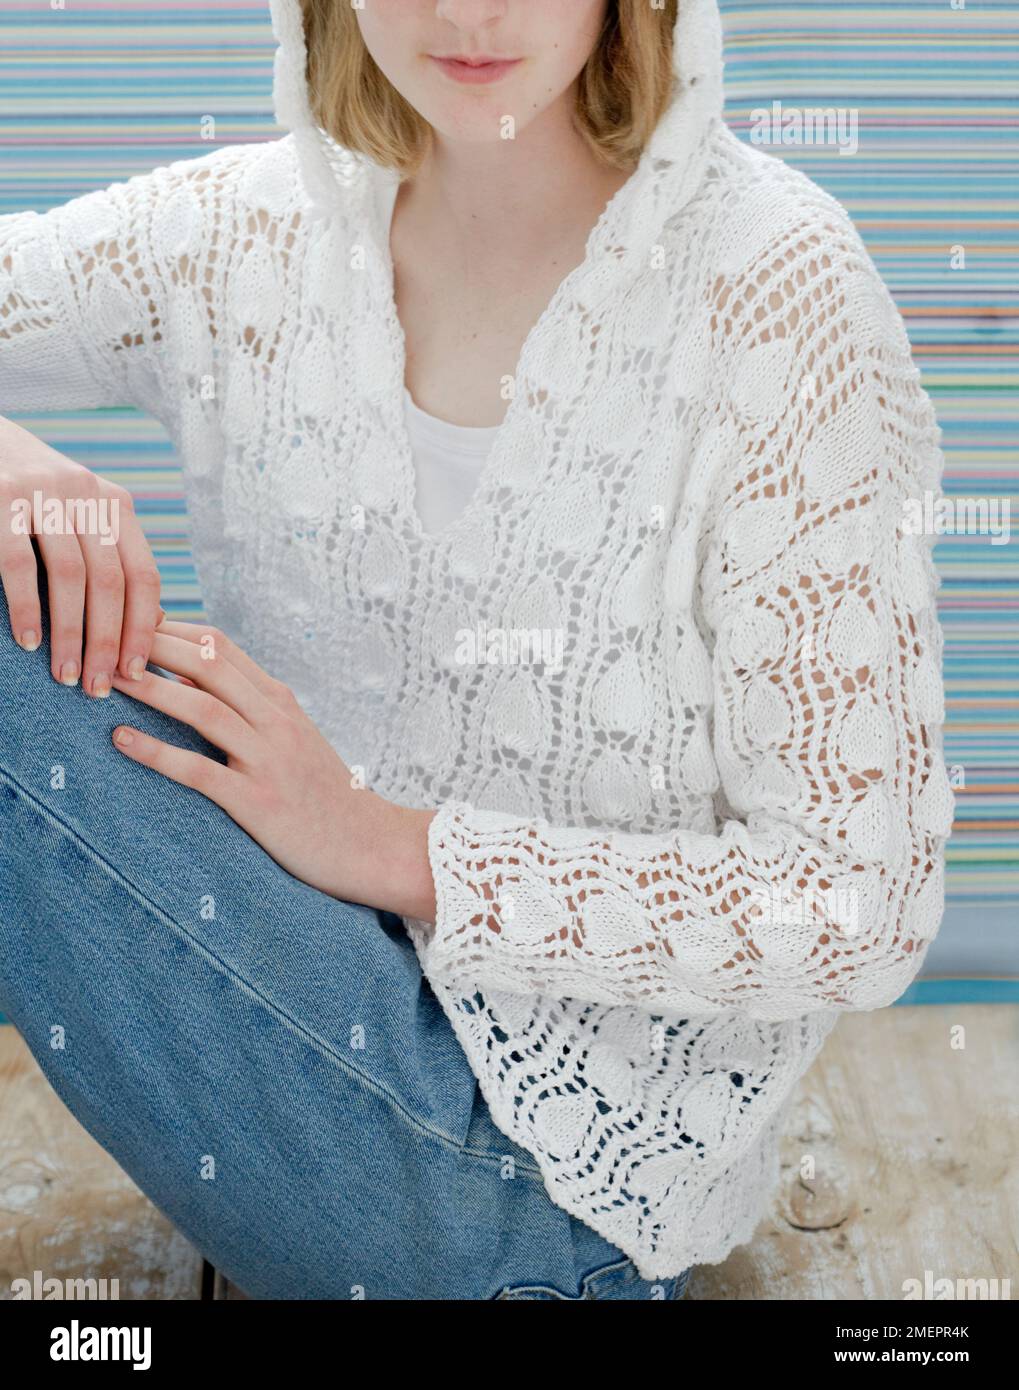 Jeune femme portant un pull à capuche blanc tricoté en dentelle Banque D'Images